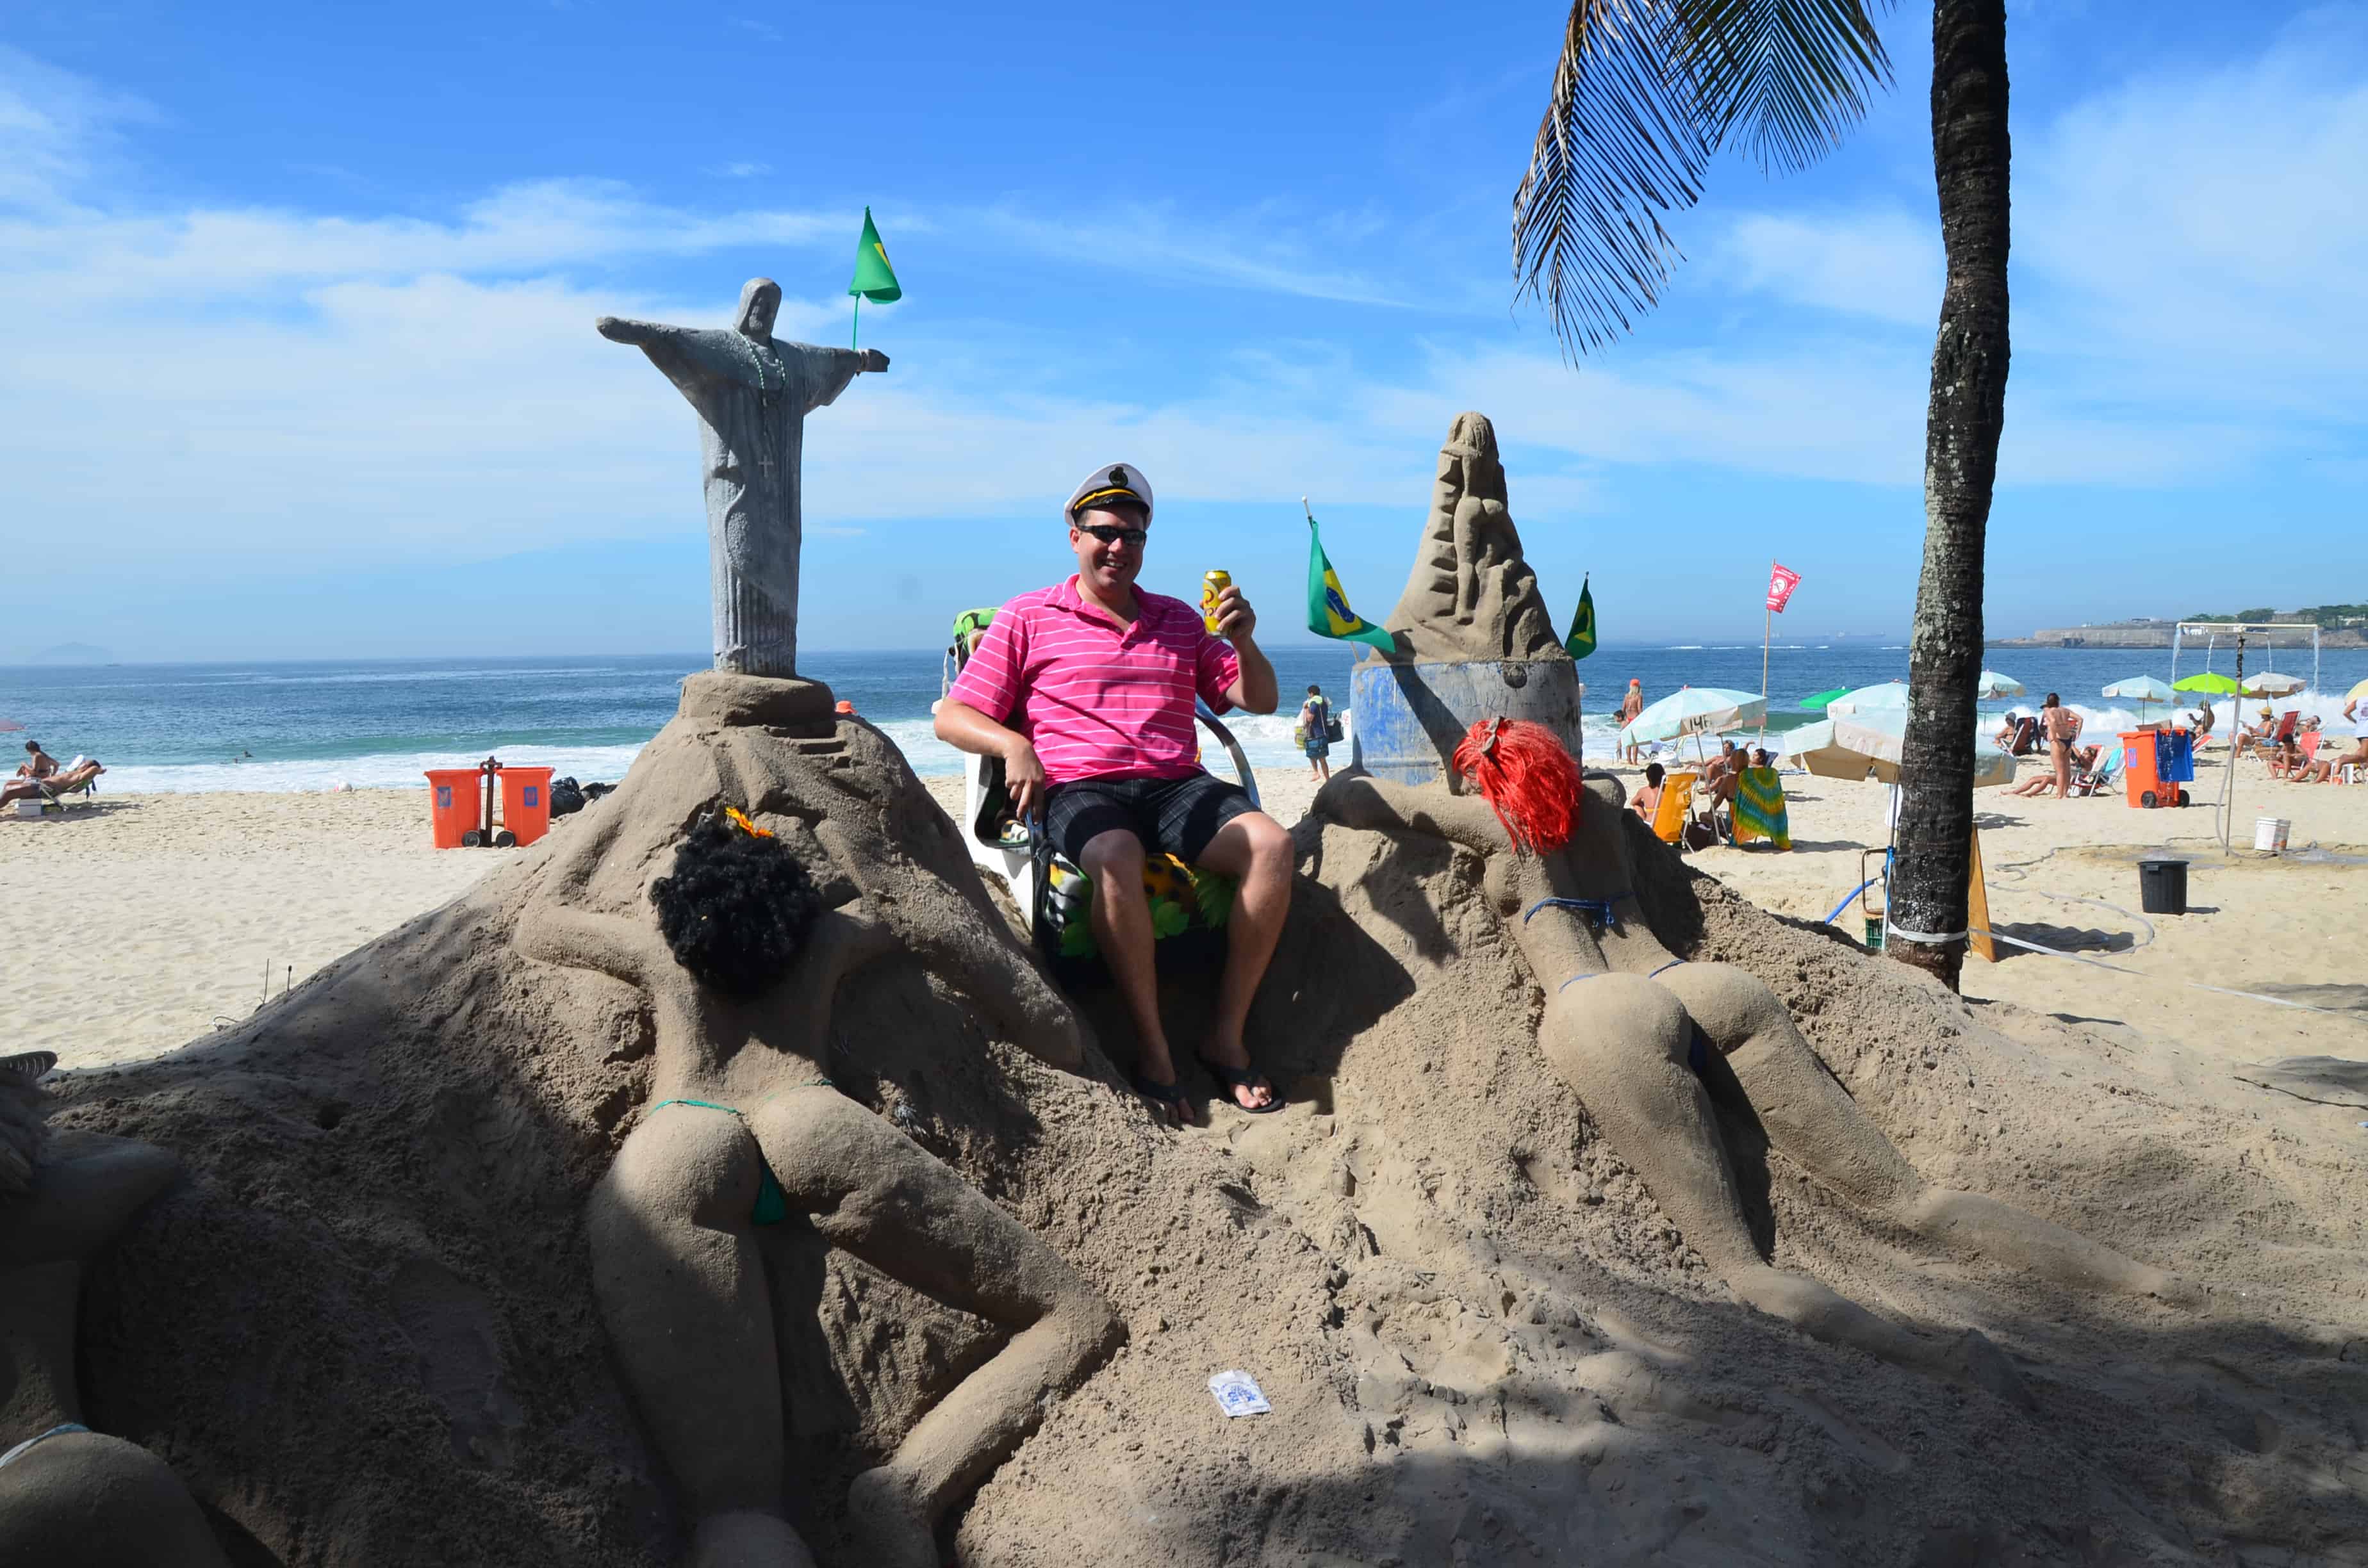 Sand castle in Copacabana in Rio de Janeiro, Brazil